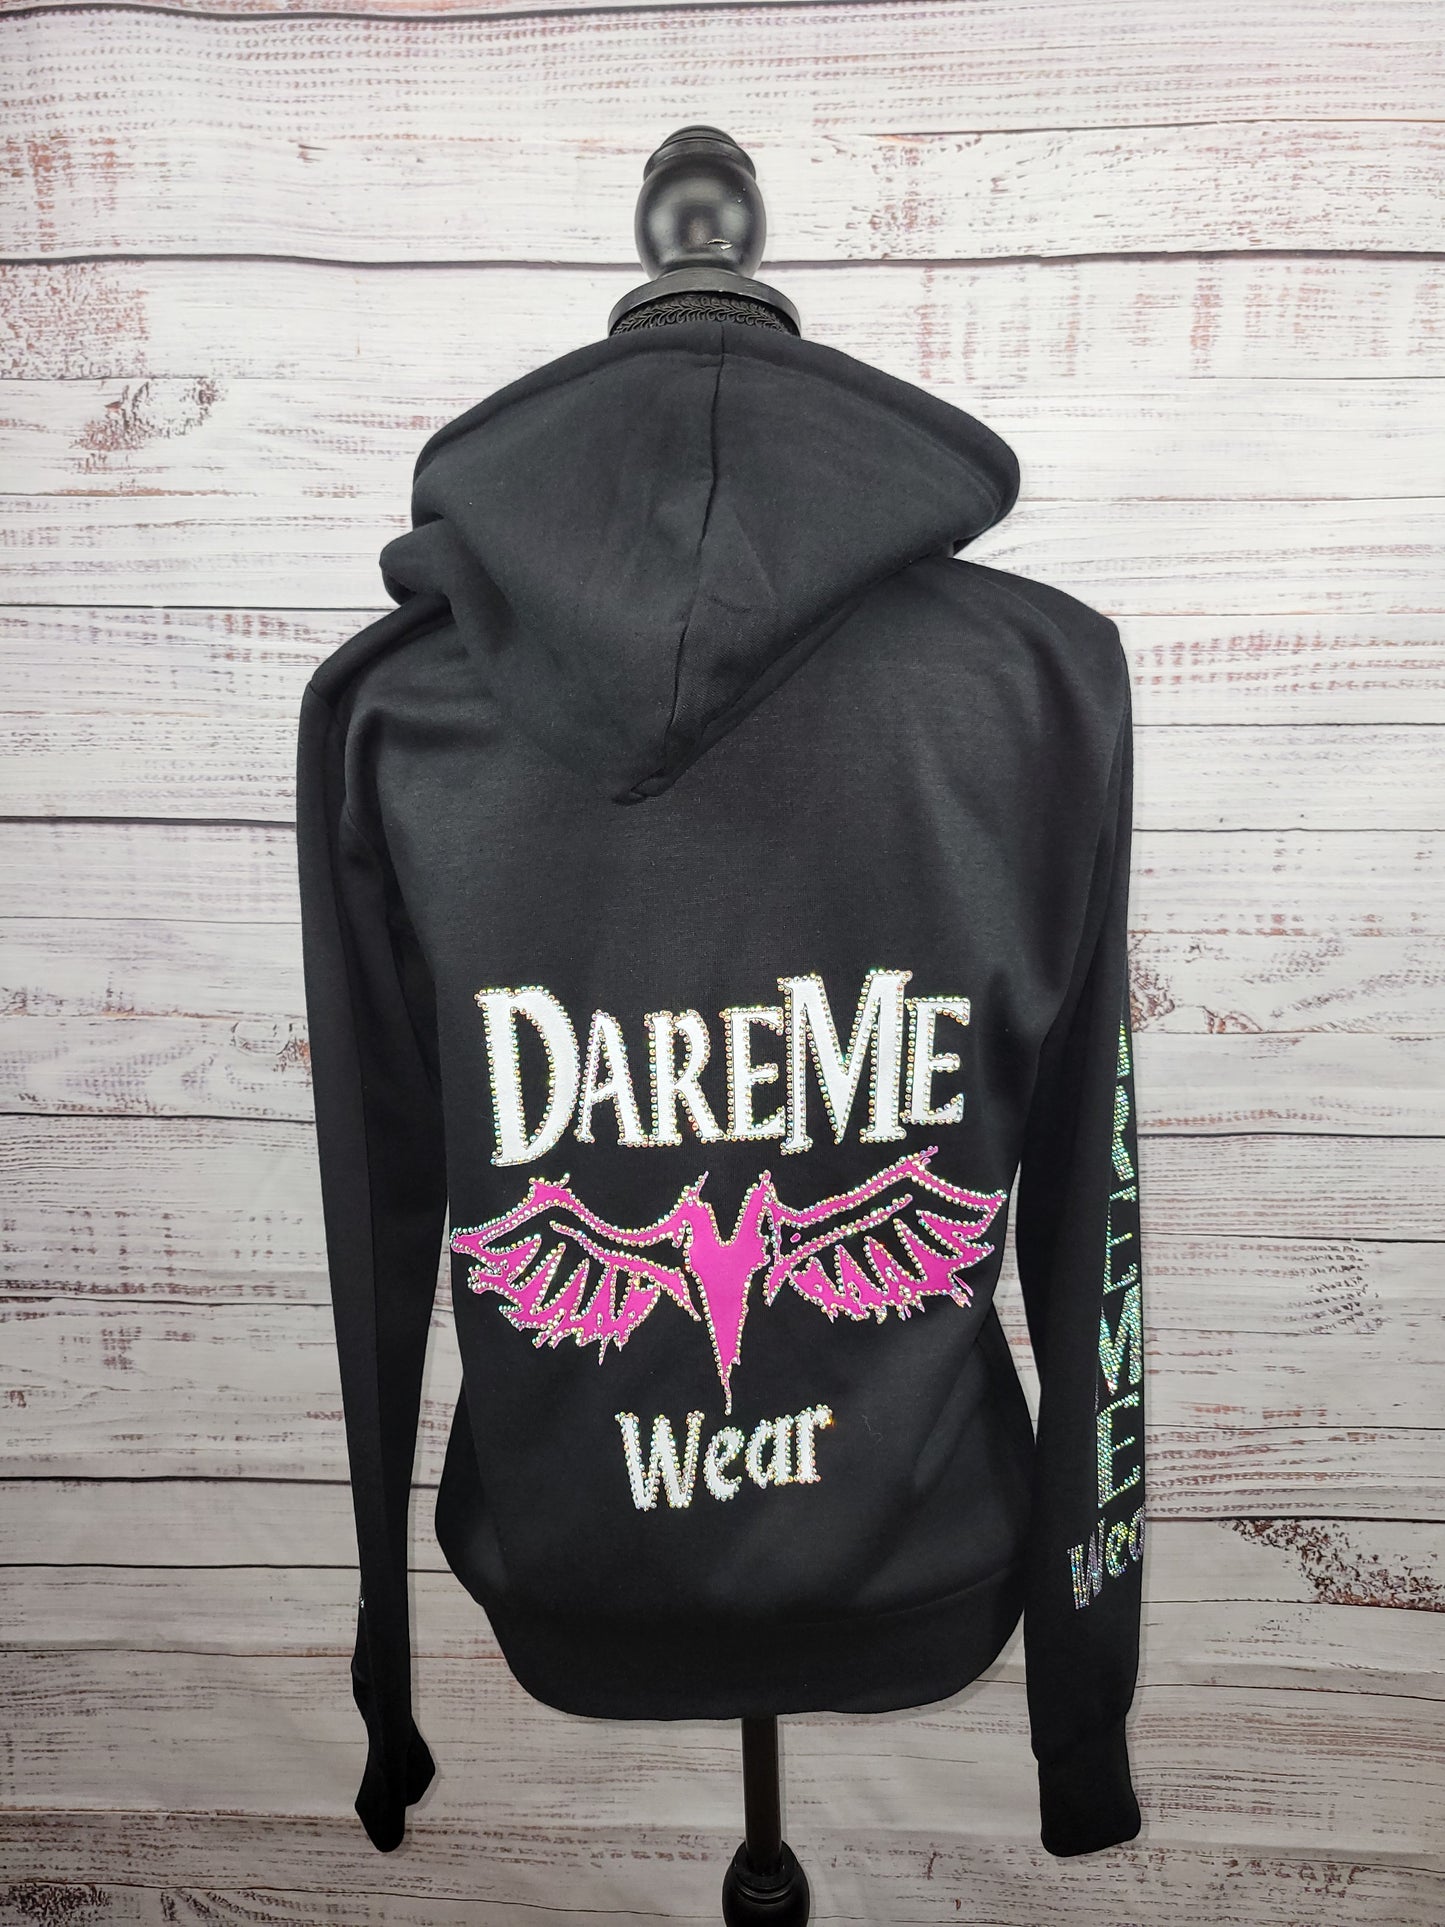 DareMe Wear branded hoodie